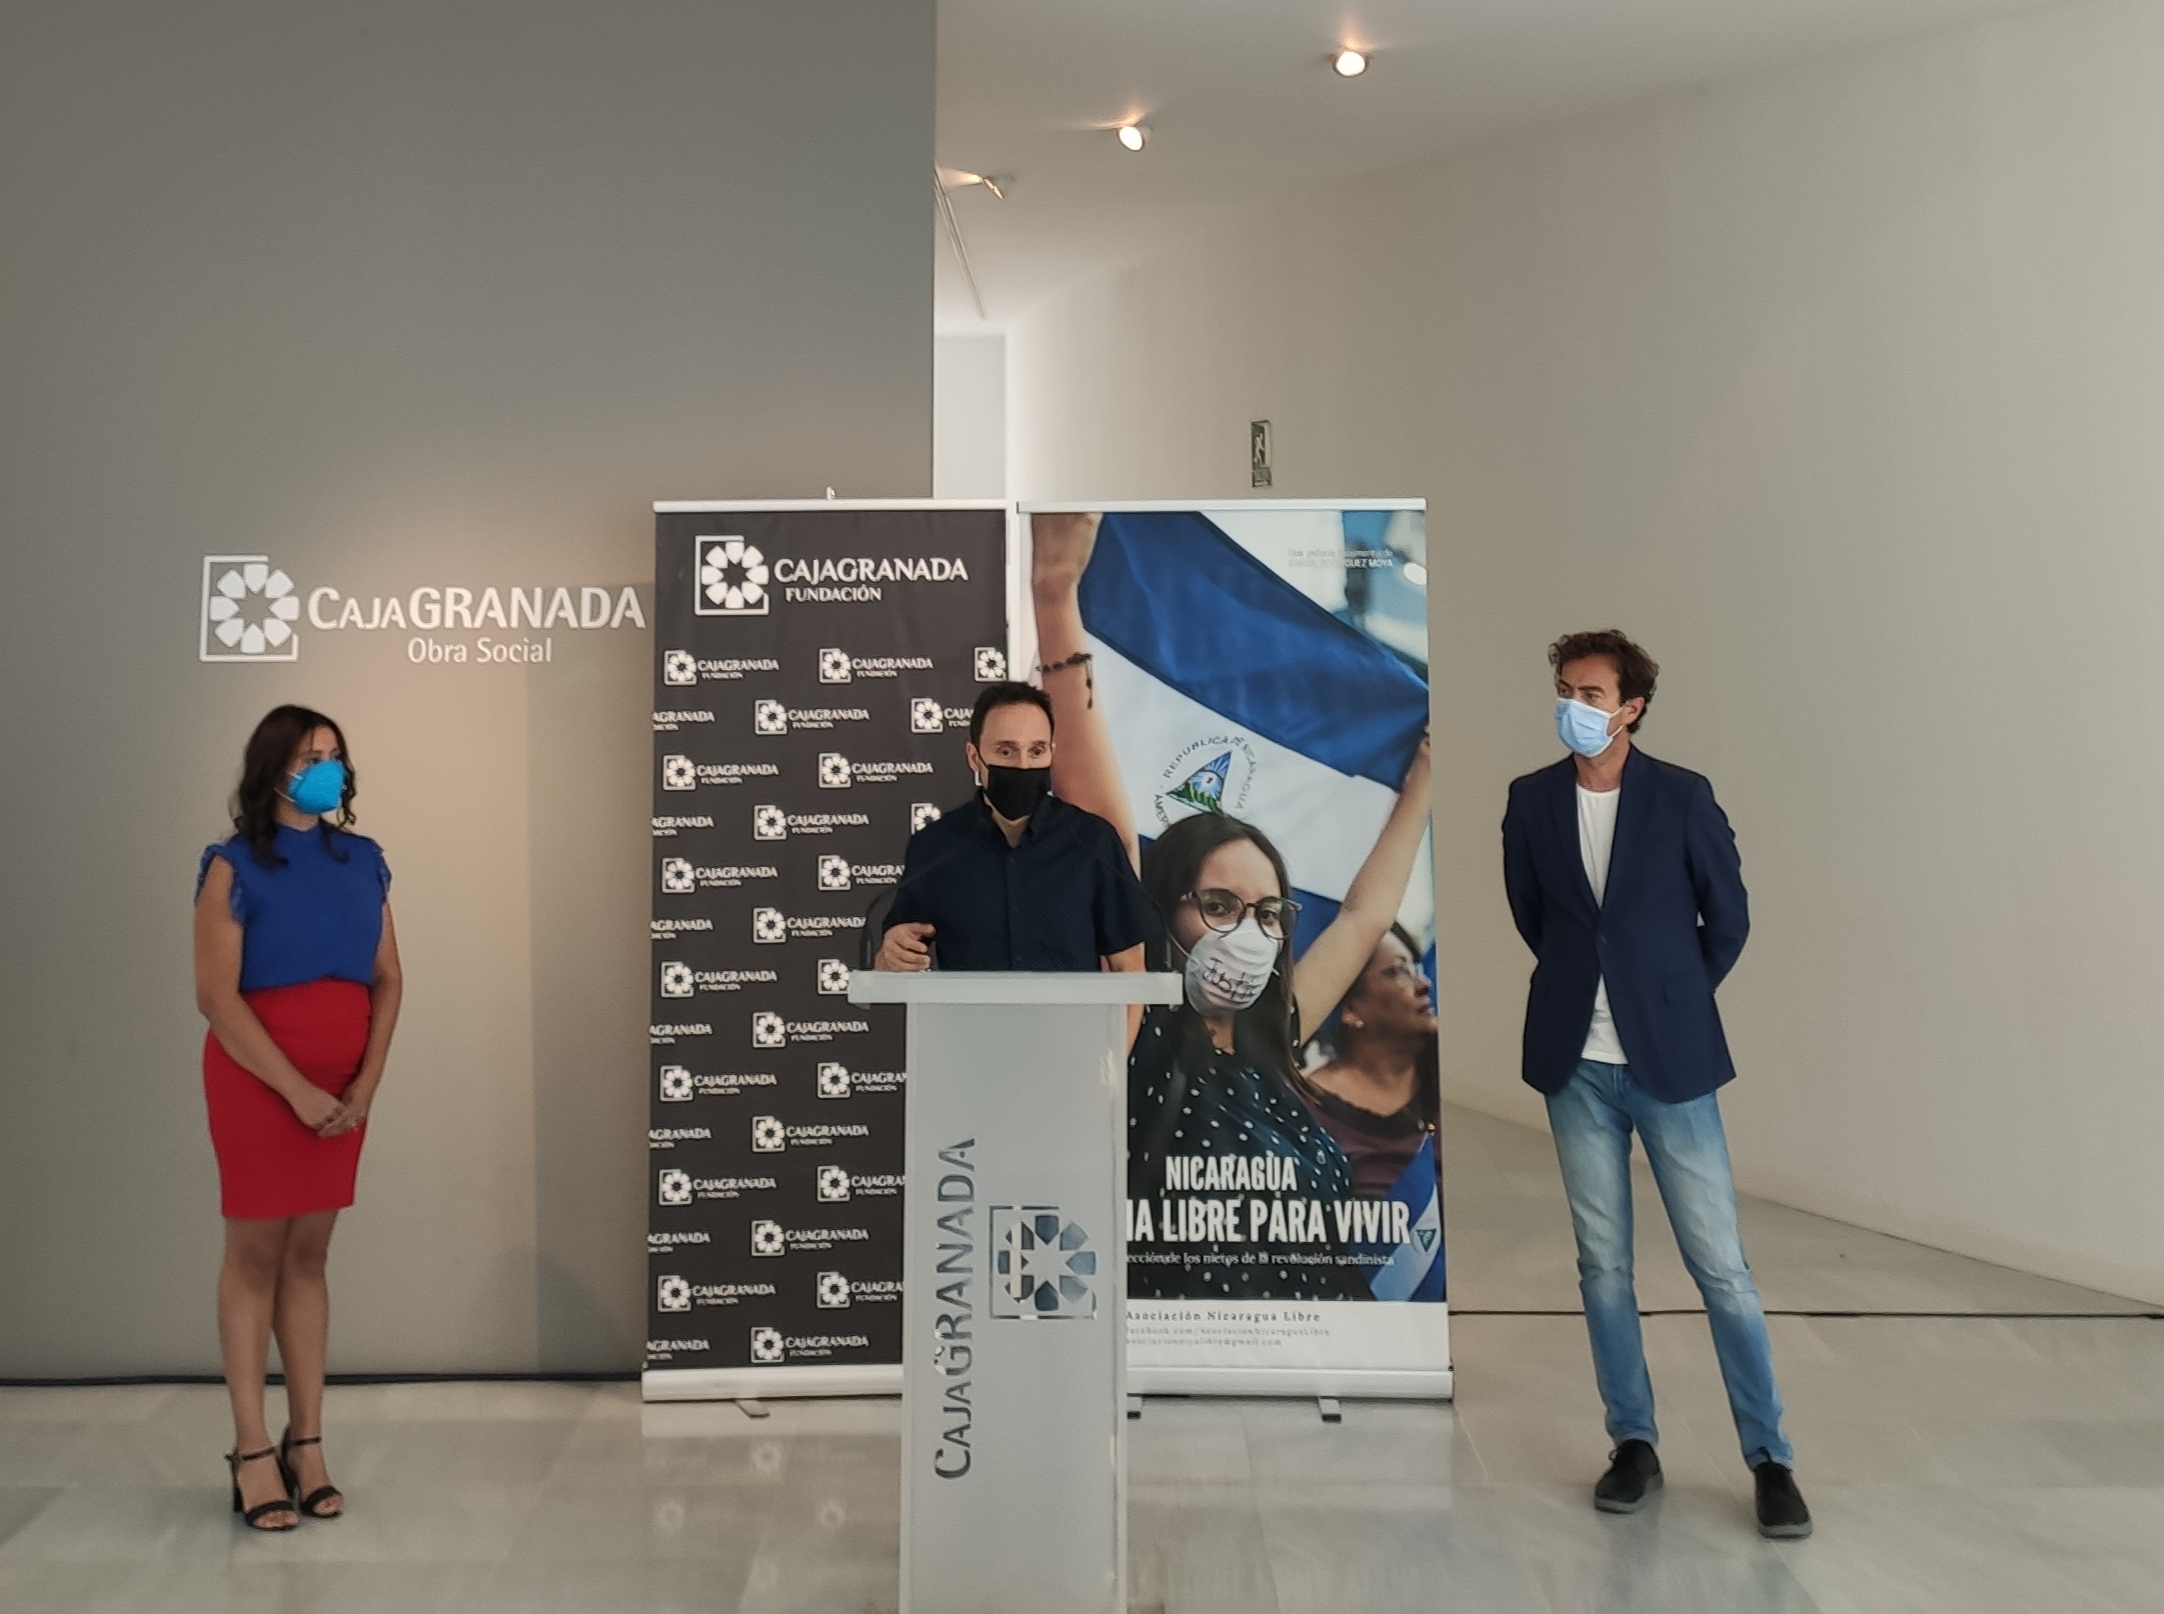 El Centro Cultural CajaGranada acoge el documental ‘Nicaragua, patria libre para vivir’, el documental que retrata la represión en el país